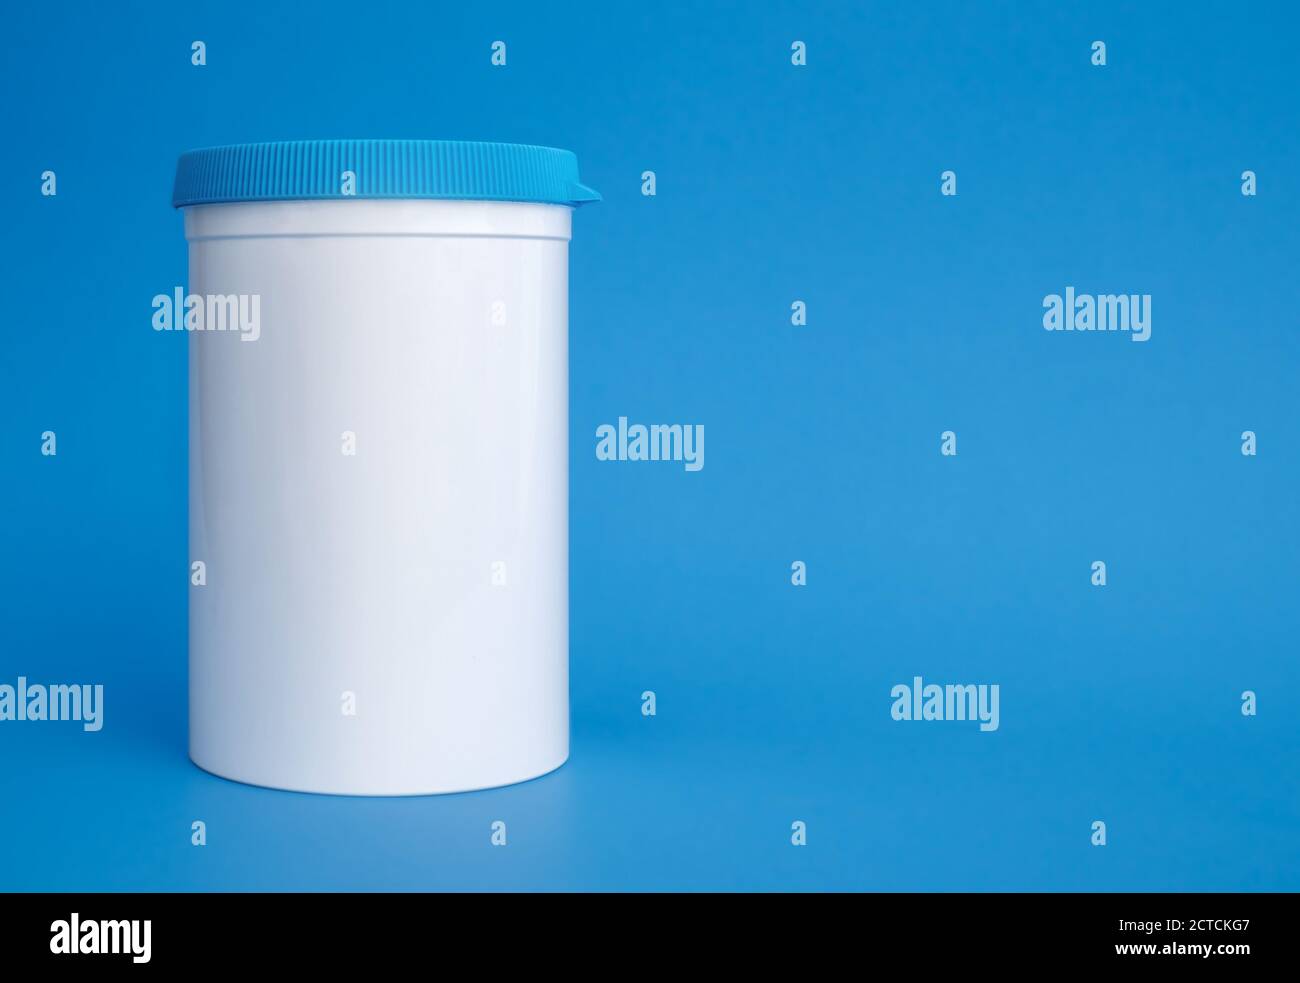 Dispensador de pastillas puede o tarro. Contenedor de plástico blanco grande con tapón de rosca azul, reutilizable. Se utiliza para dispensar y almacenar suplementos y medicamentos. Foto de stock